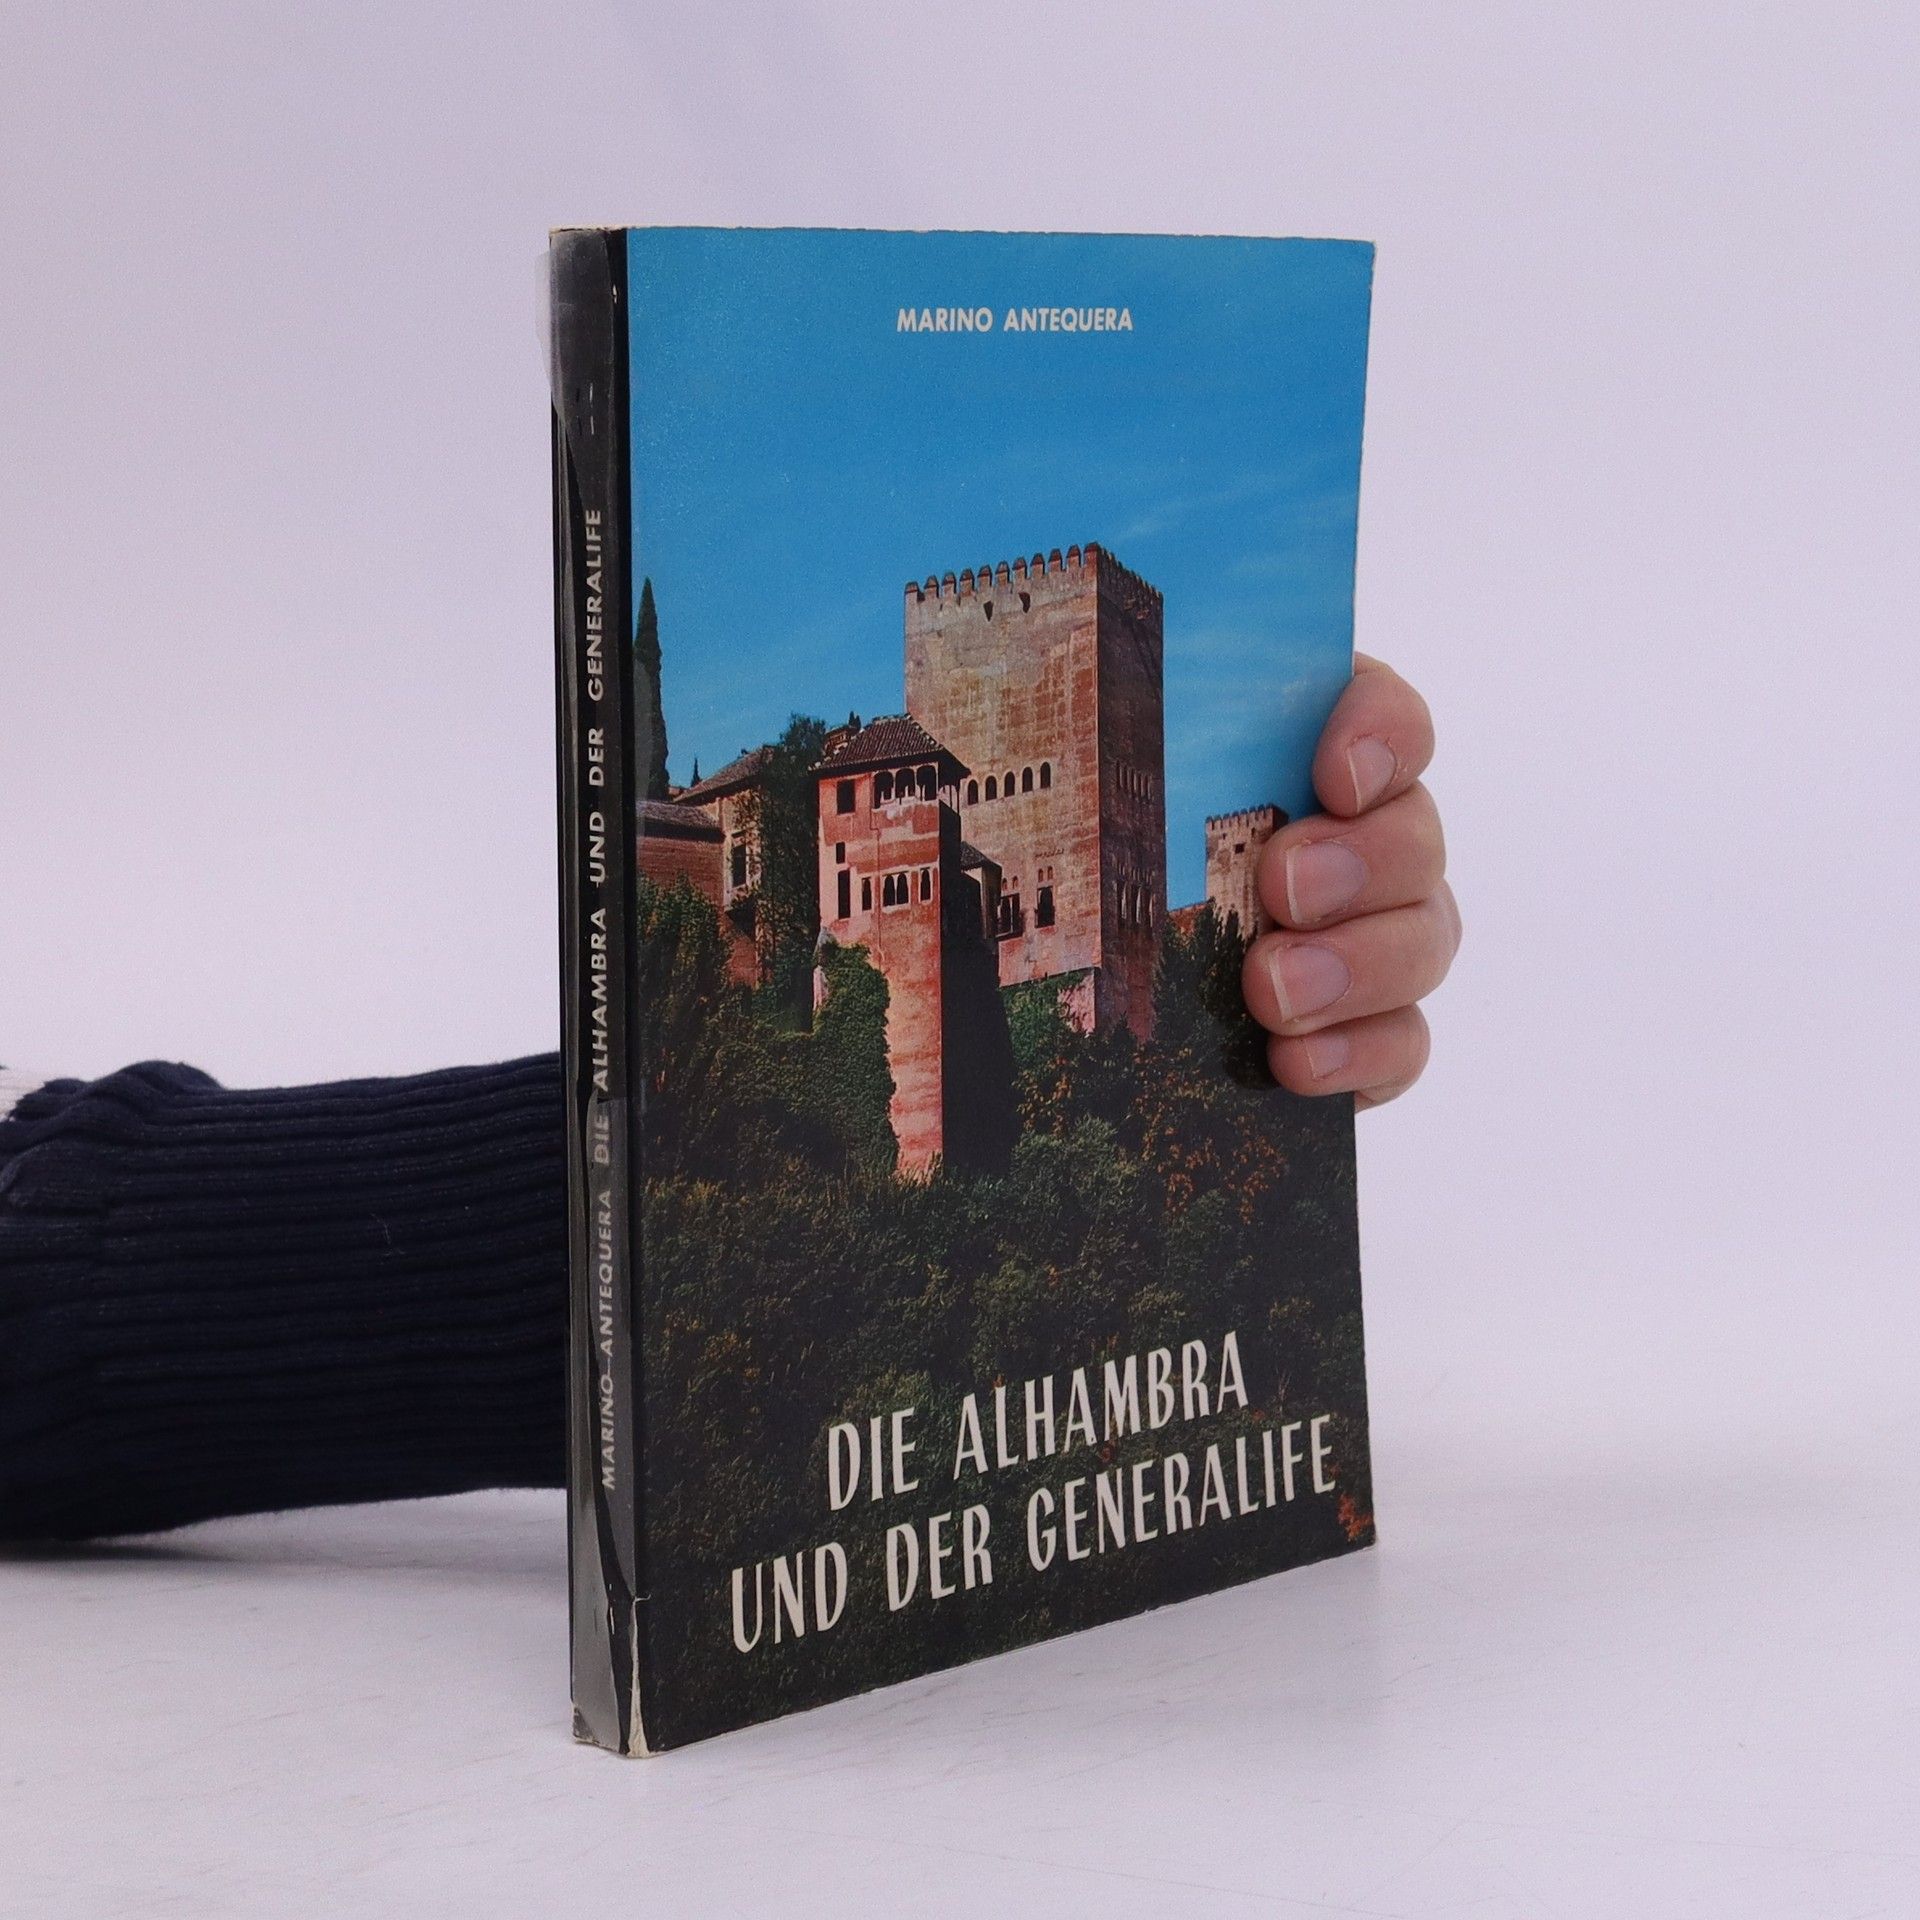 Die Alhambra und der generalife - Marino Antequera